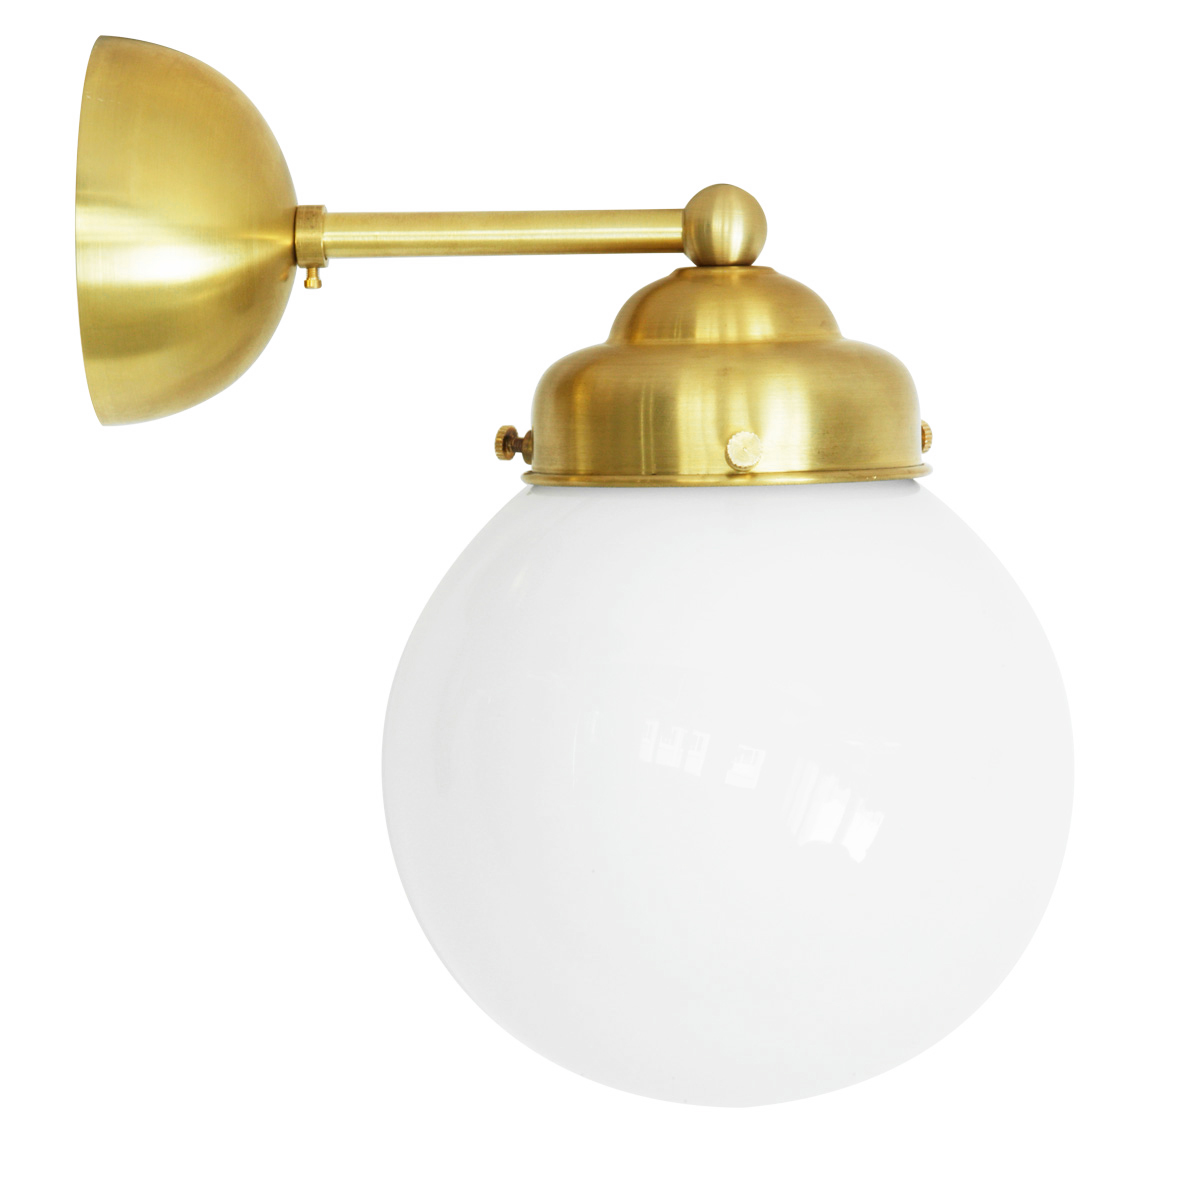 Kugel-Wandlampe mit Opalglas Ø 15 cm: Keine Glaskugel-Wandleuchte 15 cm, hier Wandhalterung aus Messing natur